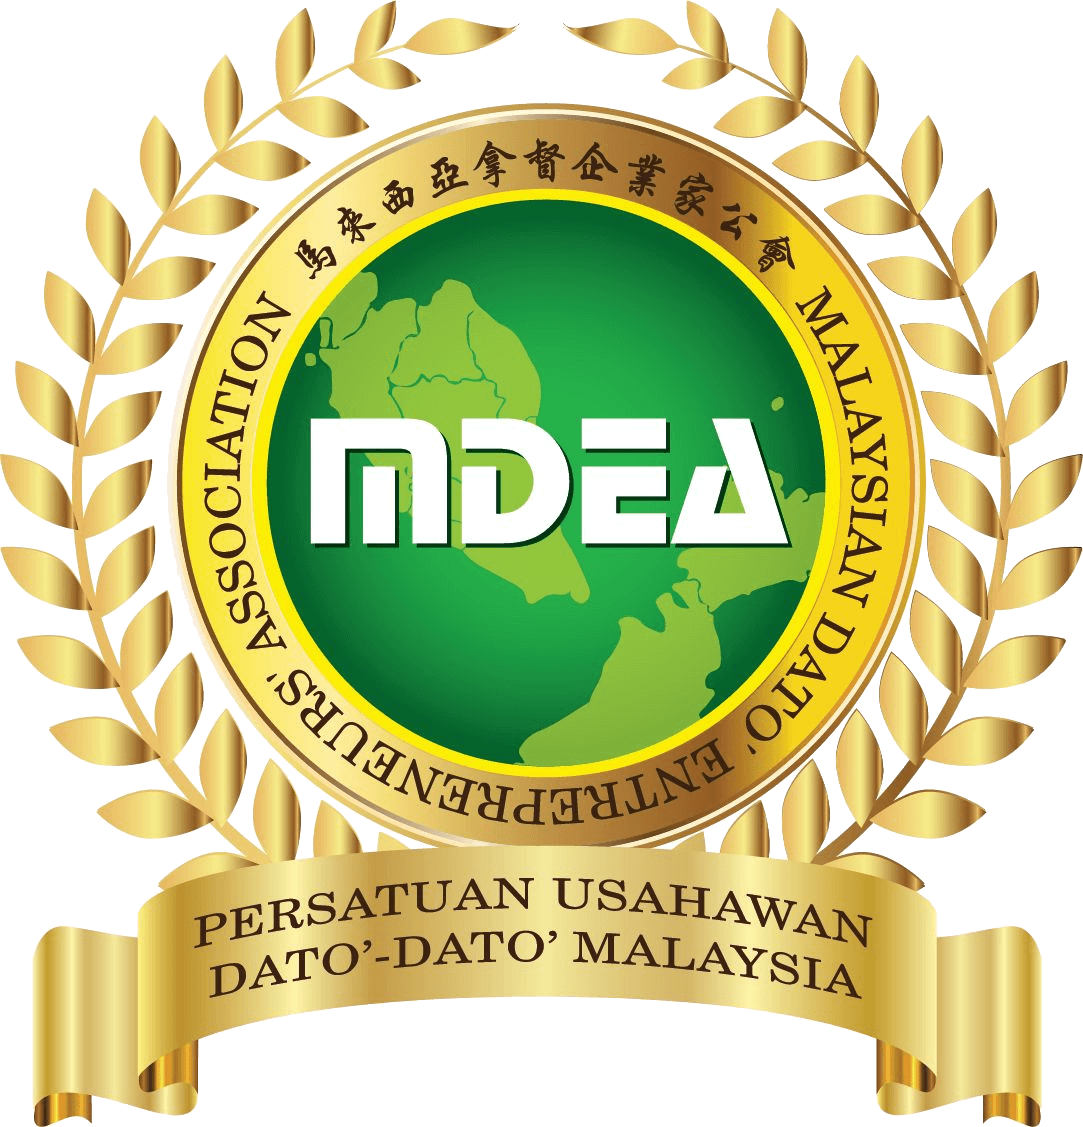 MDEA logo